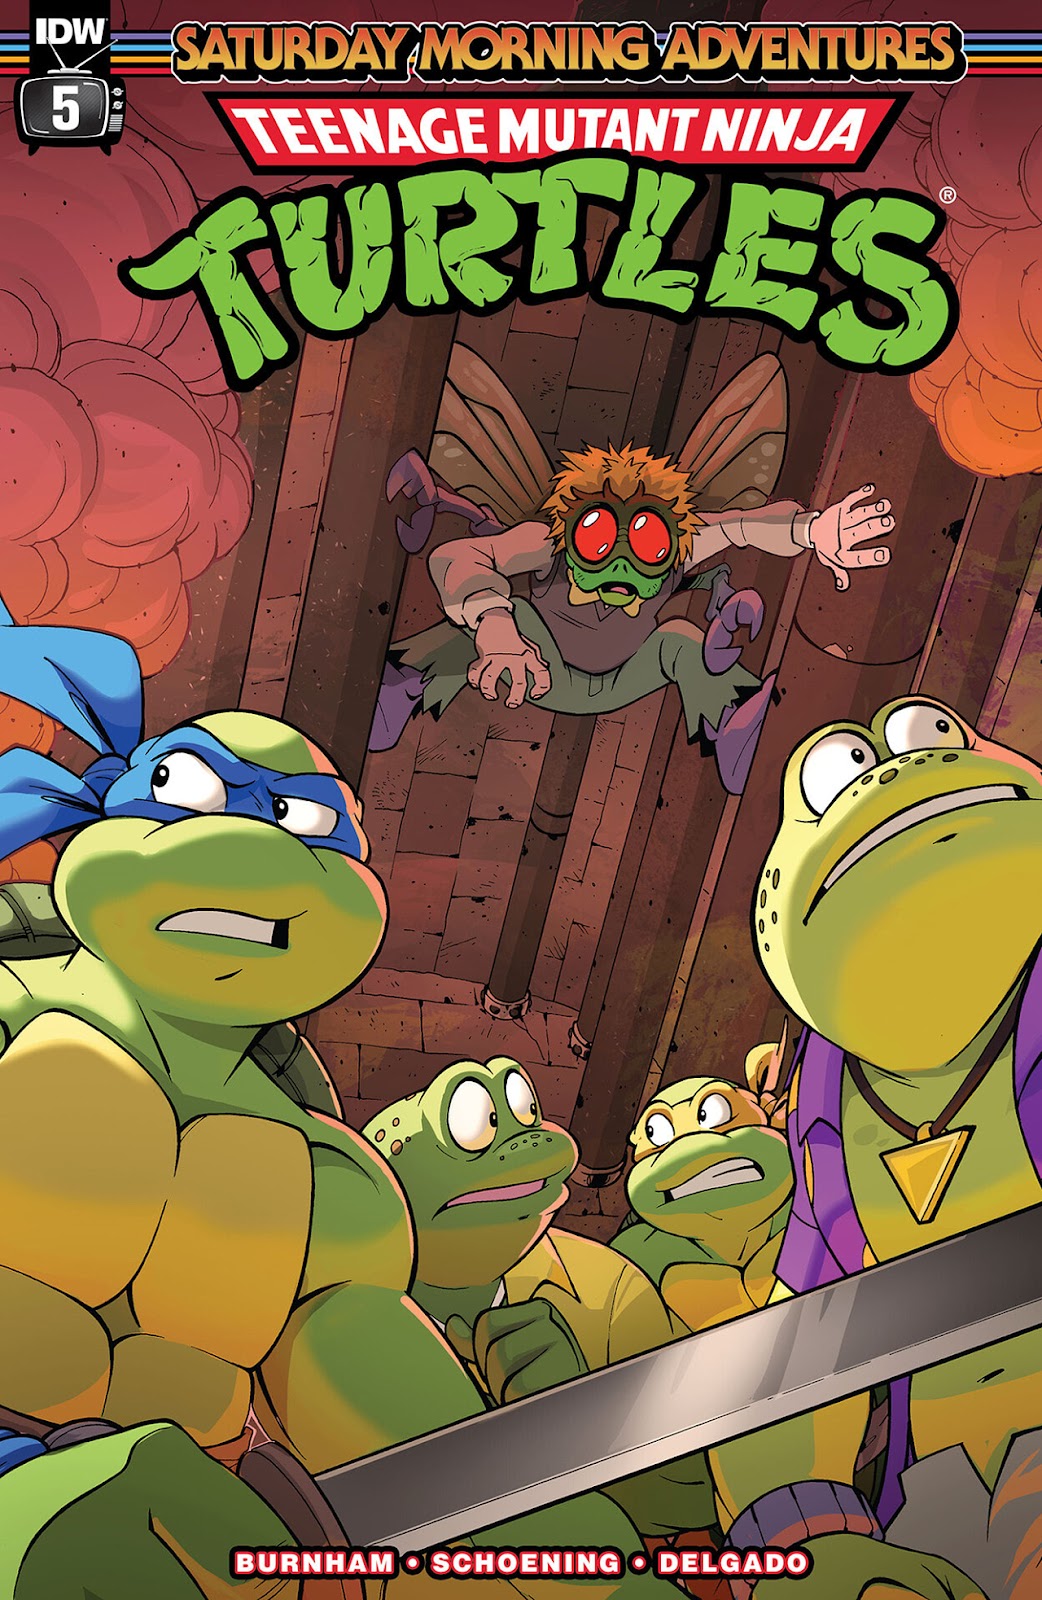 Teenage Mutant Ninja Turtles: Saturday Morning Adventures Continued issue 5 - Page 1